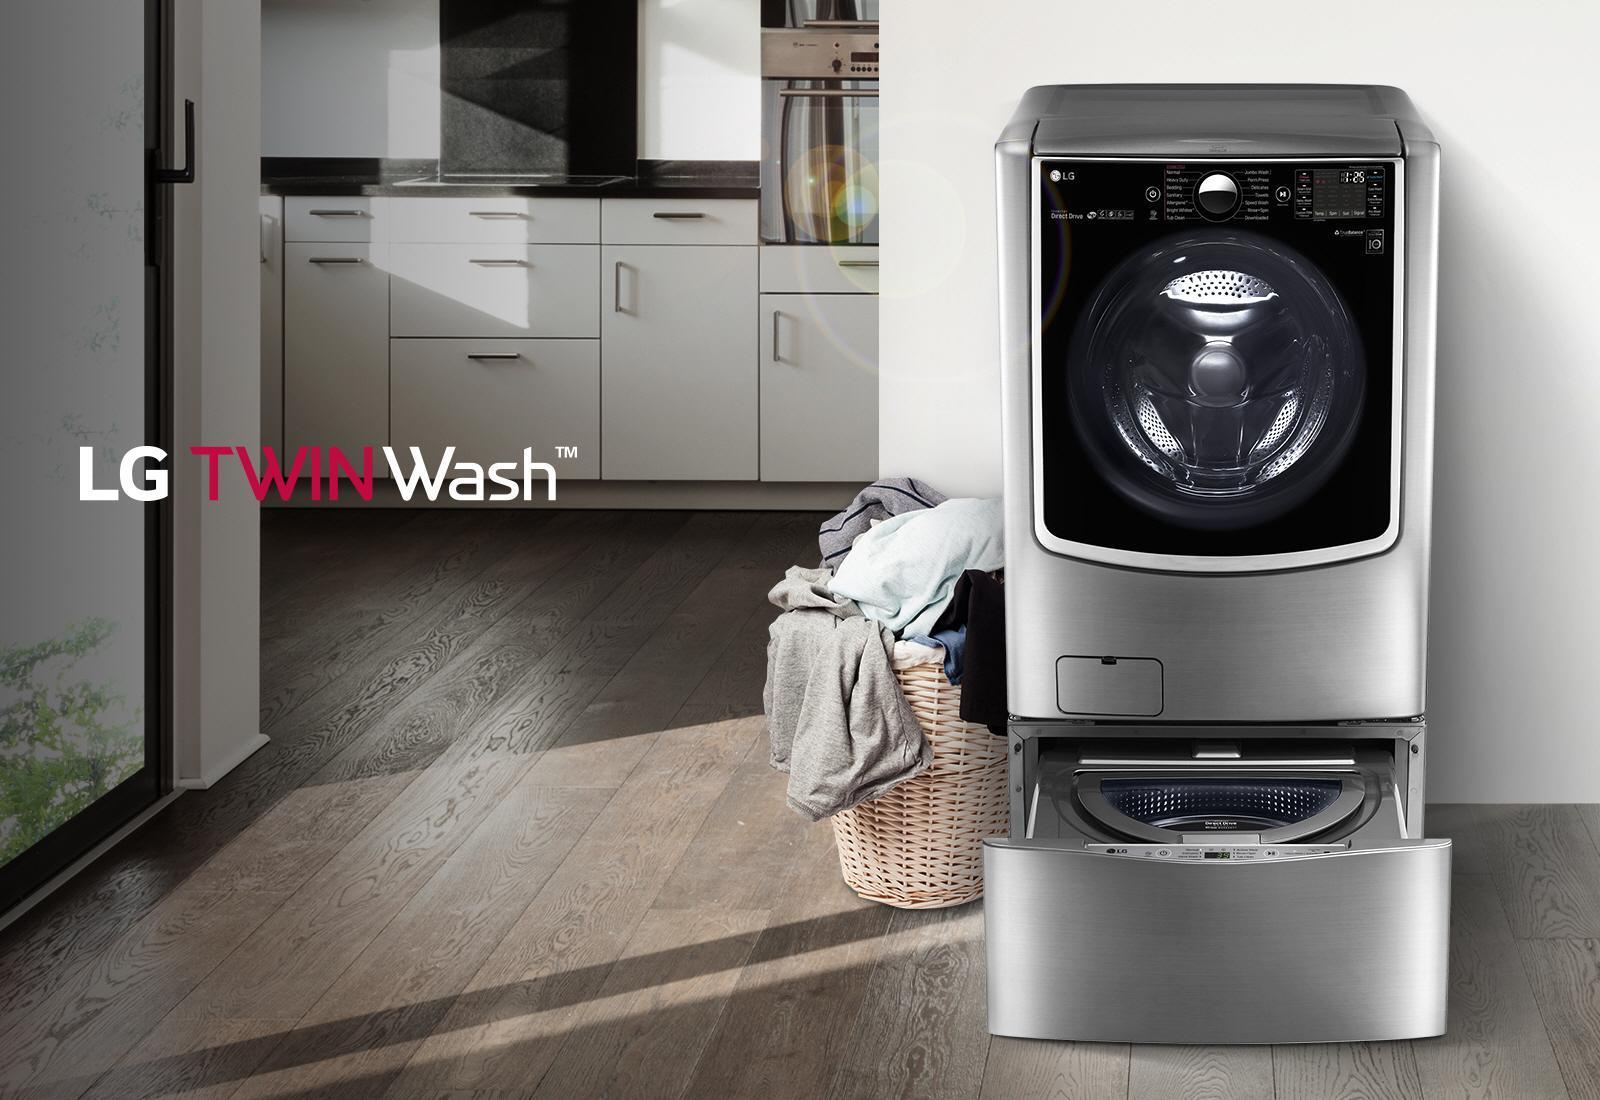 LG TWINWash sở hữu nhiều công nghệ giặt tiên tiến